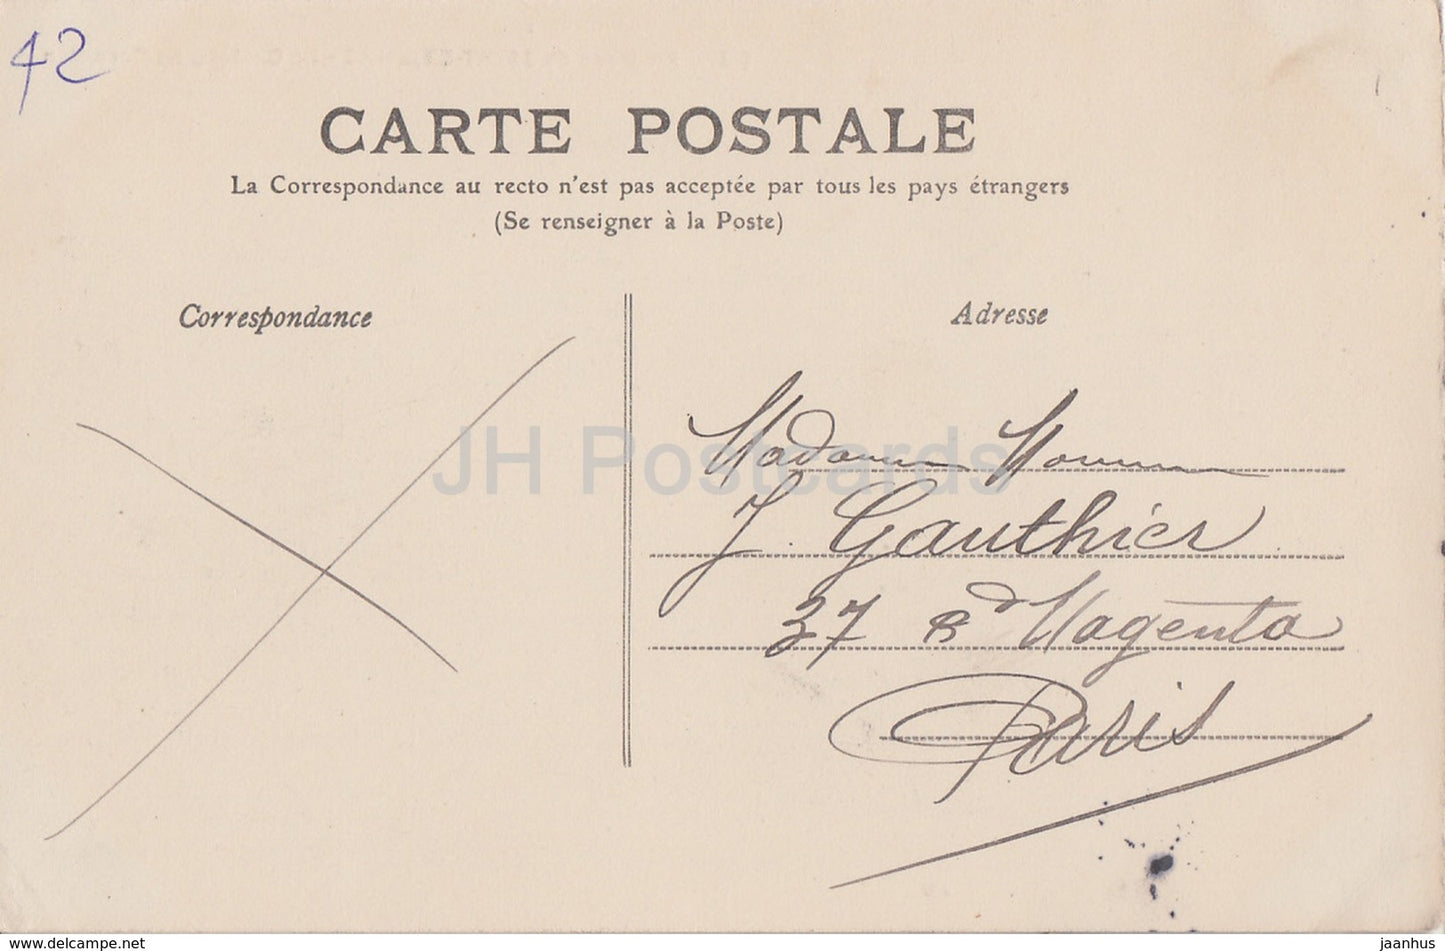 Environs de Saint Etienne - Le Chateau de Cornillon - Schloss - 85 - alte Postkarte - 1901 - Frankreich - gebraucht